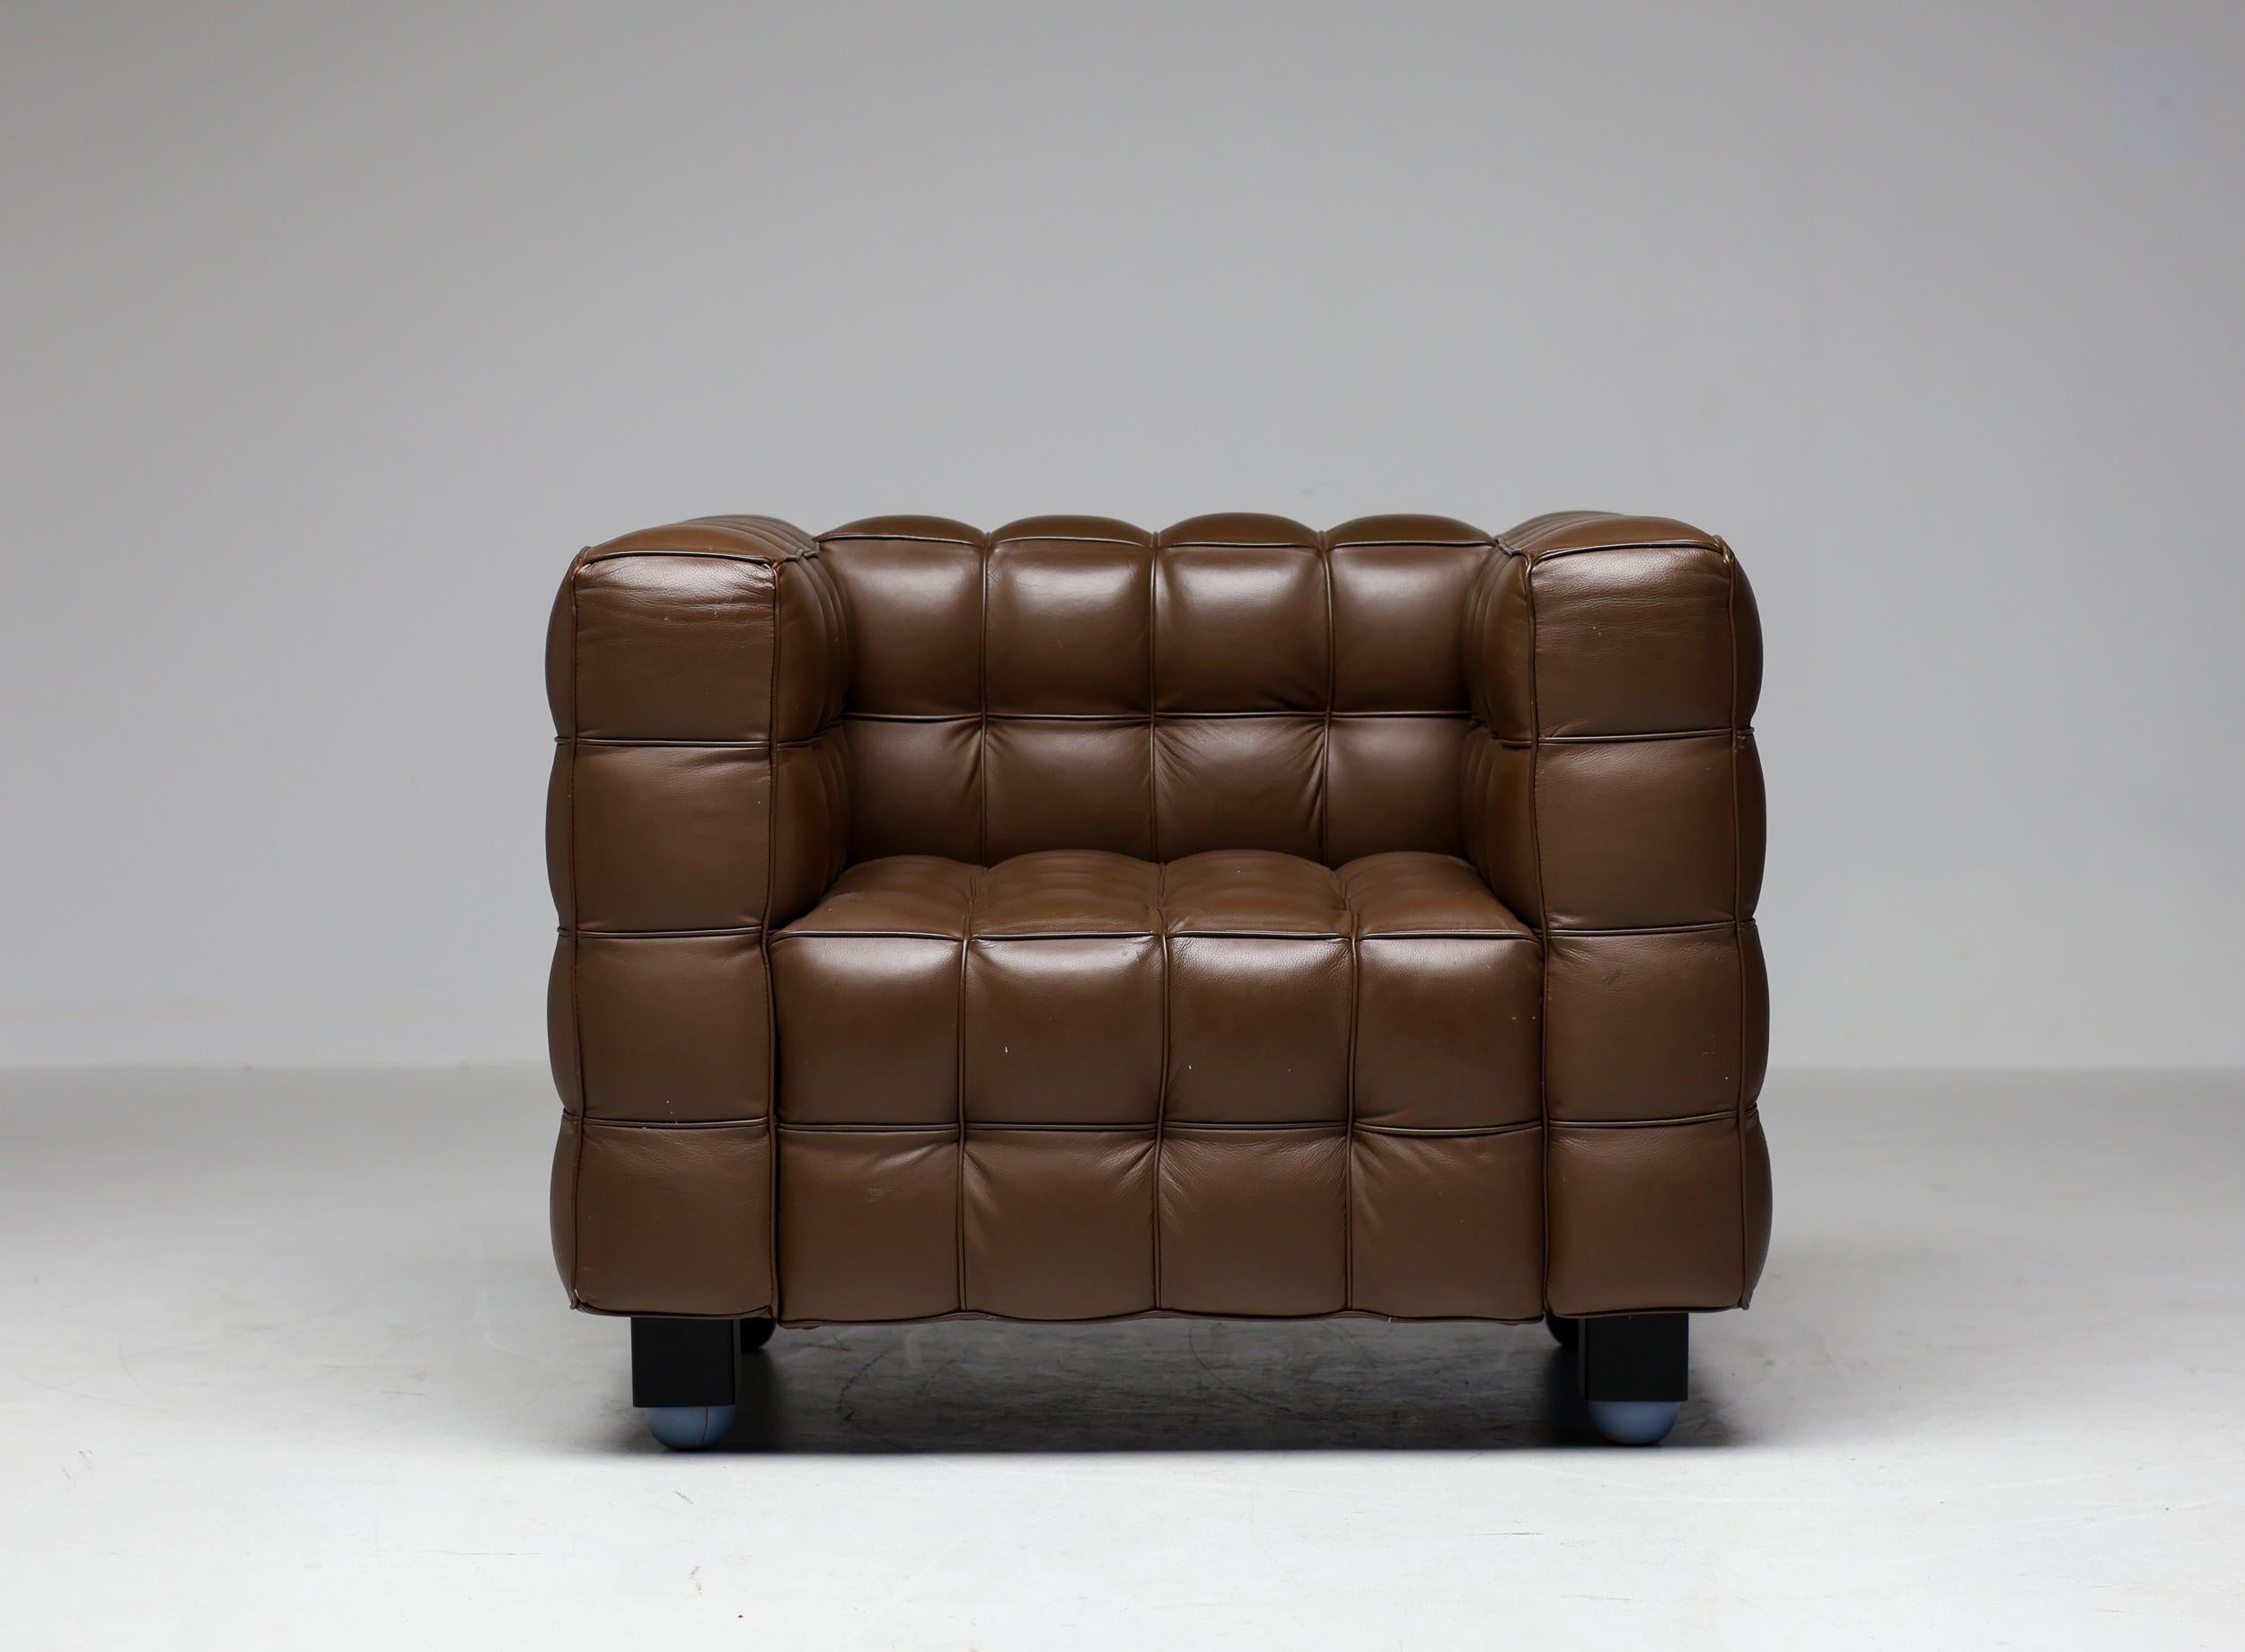 Magnifique canapé Kubus 8020 vintage en cuir marron chocolat et fauteuil assorti, conçus par Josef Hoffman et fabriqués par Alivar. Cet ensemble a été entretenu avec amour et est en parfait état d'origine.
Le catalogue du musée Alivar avec un